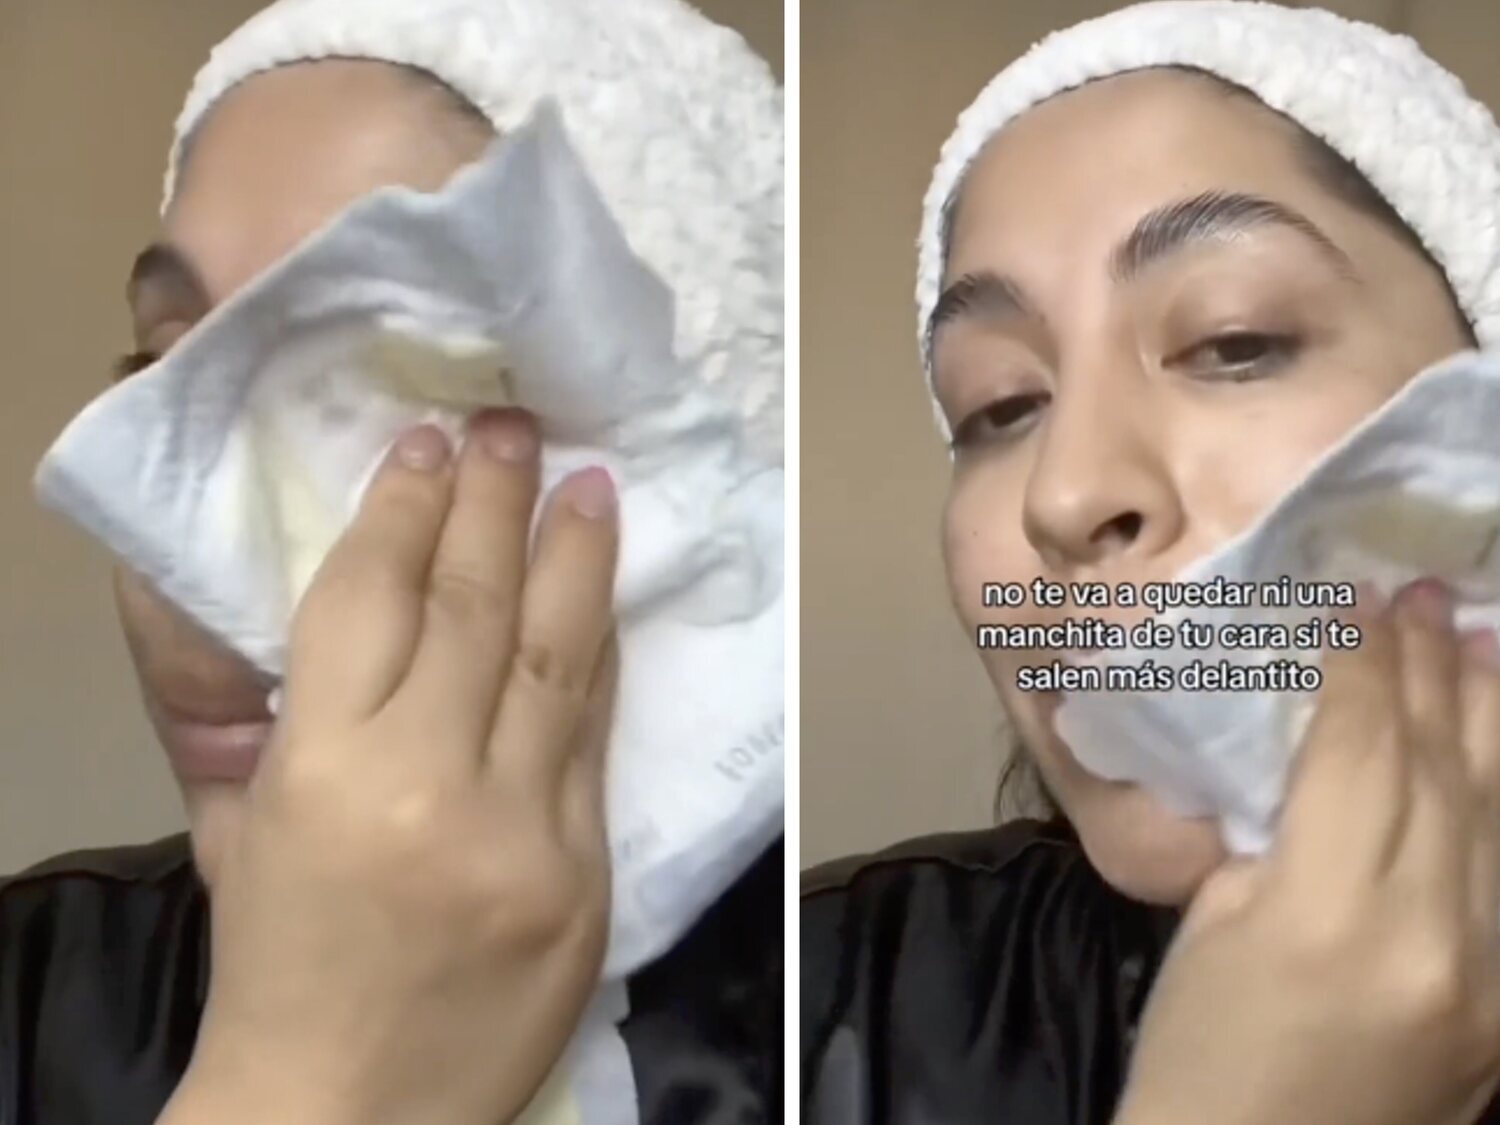 Una tiktoker recomienda para el cuidado facial lavarse la cara con pañales usados